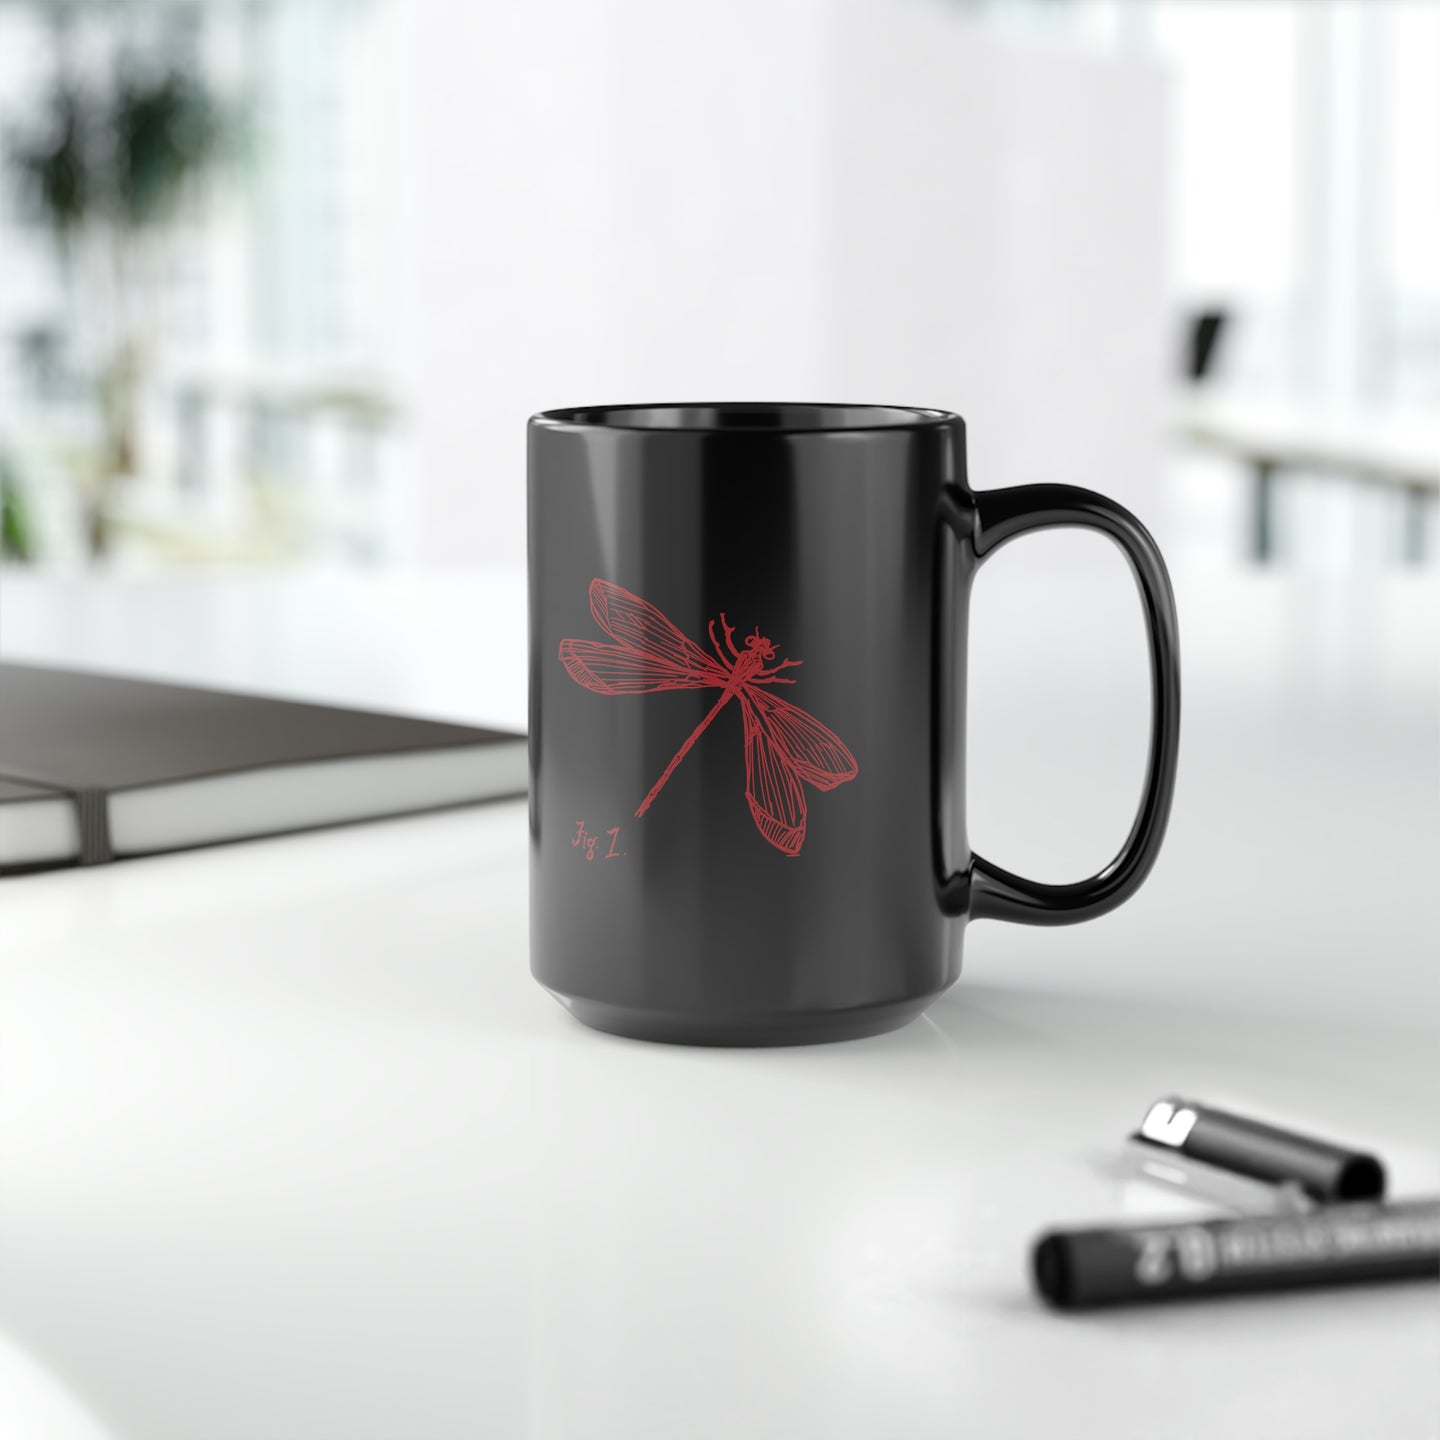 Metz & Matteo Dragonfly Logo | Ceramic Mug | 15oz | Black